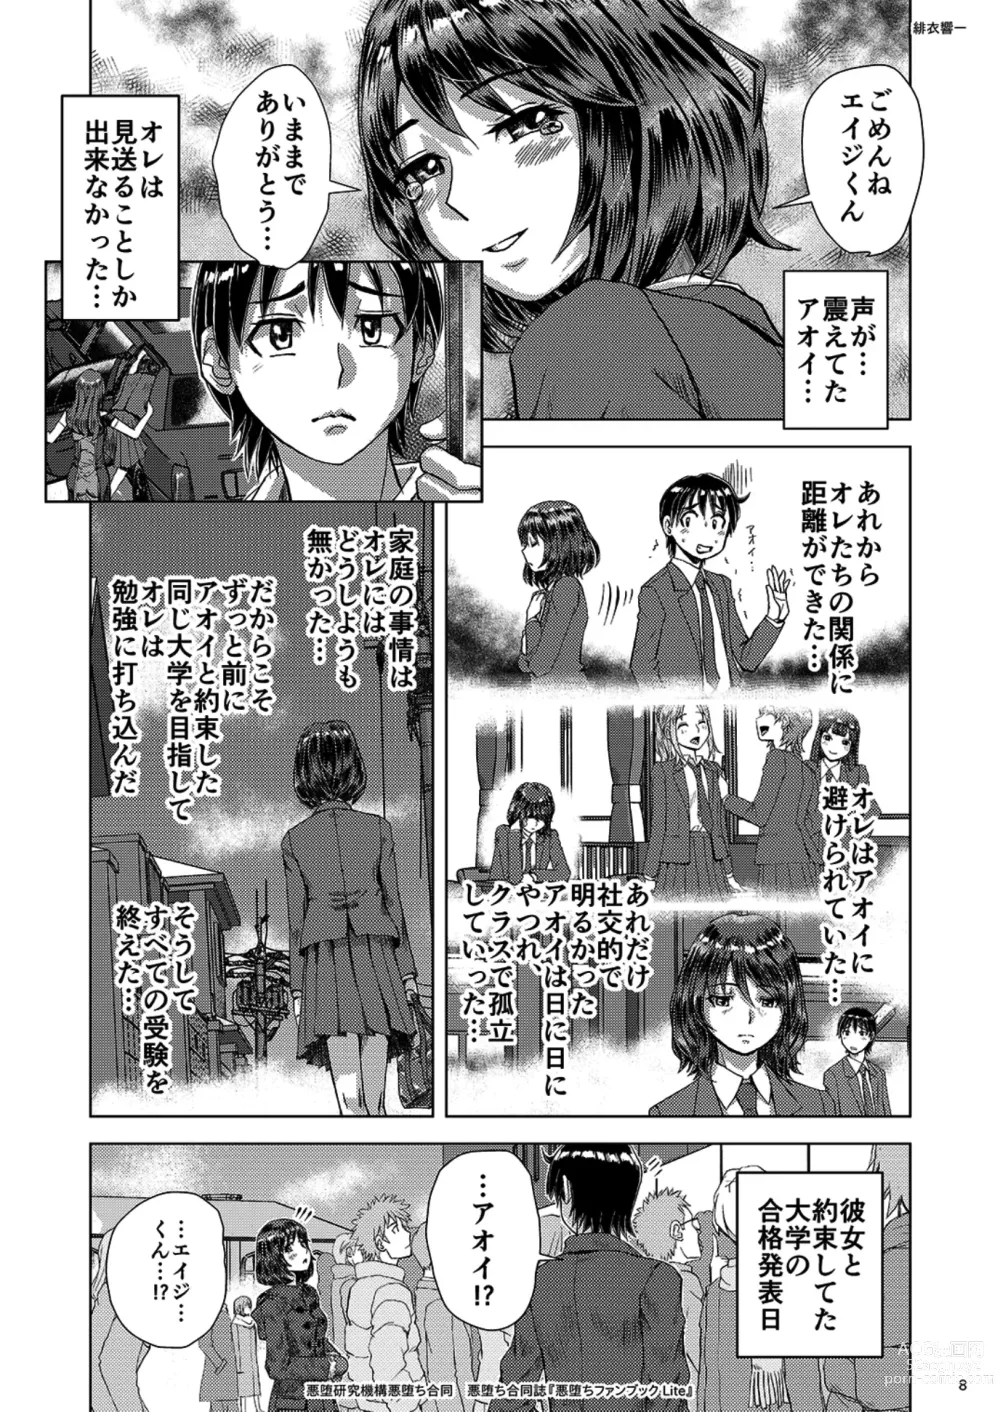 Page 8 of doujinshi Akuochi Goudoushi Akuochi Fanbook Lite